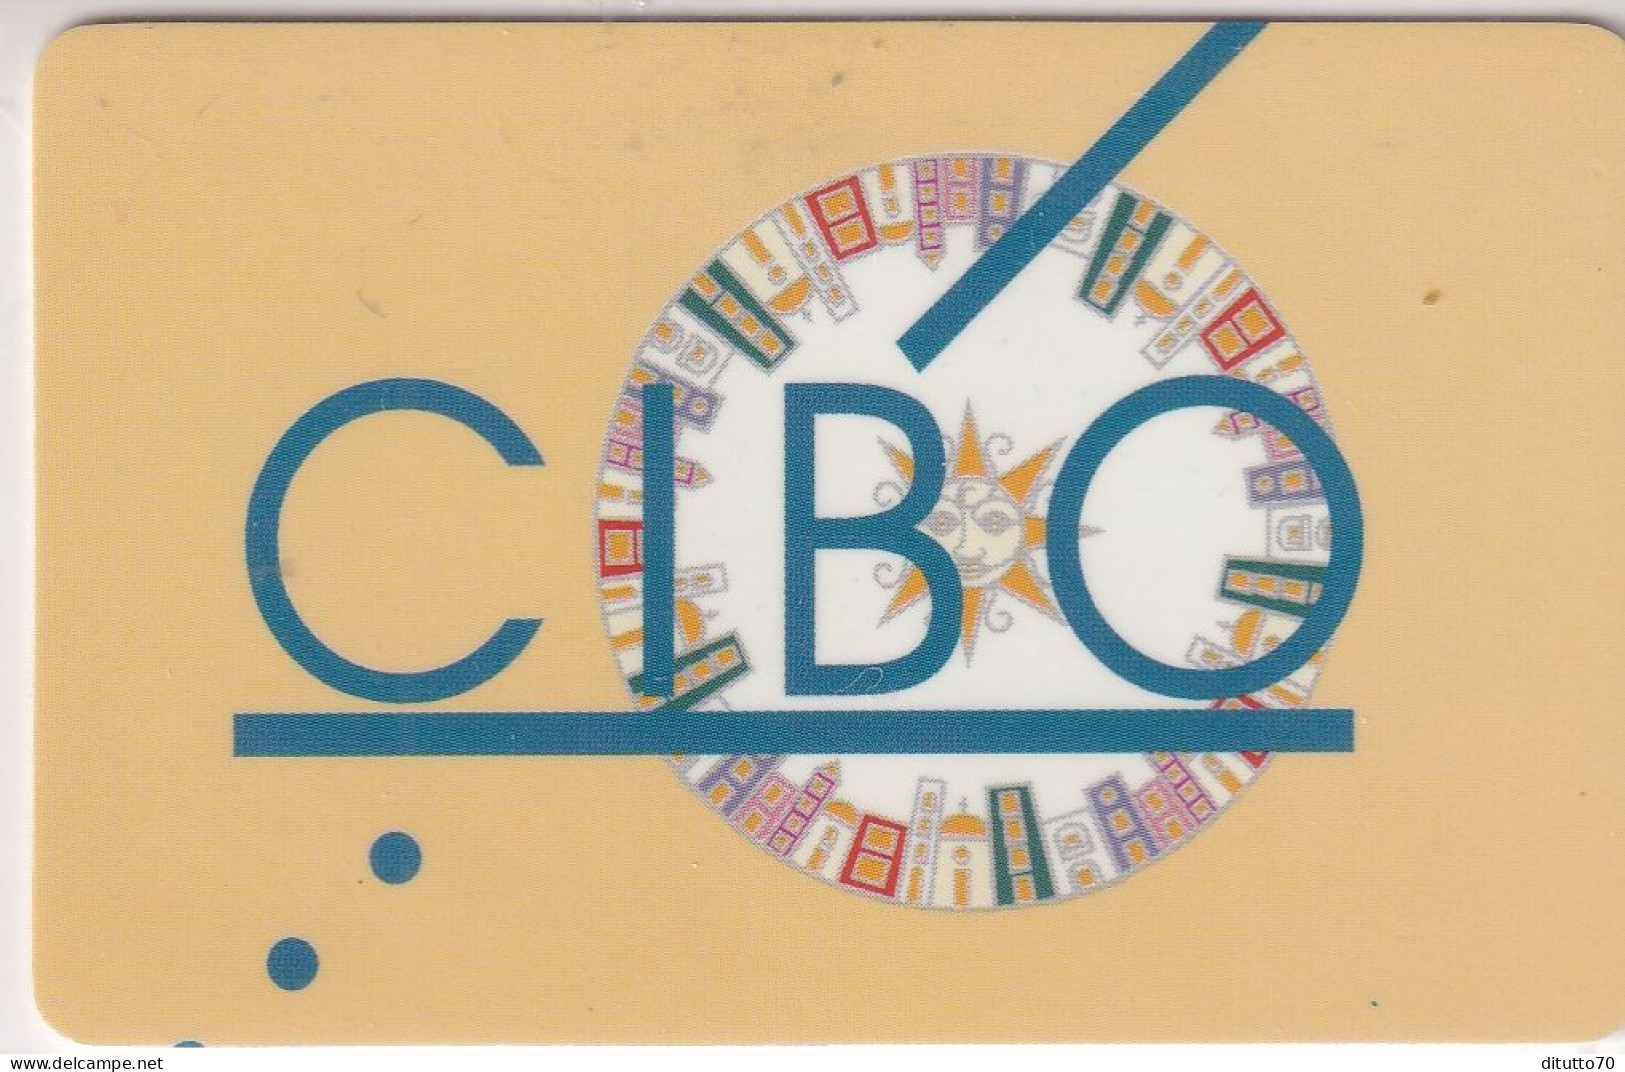 Calendarietto - Cibo - Napoli - Anno 1998 - Klein Formaat: 1991-00